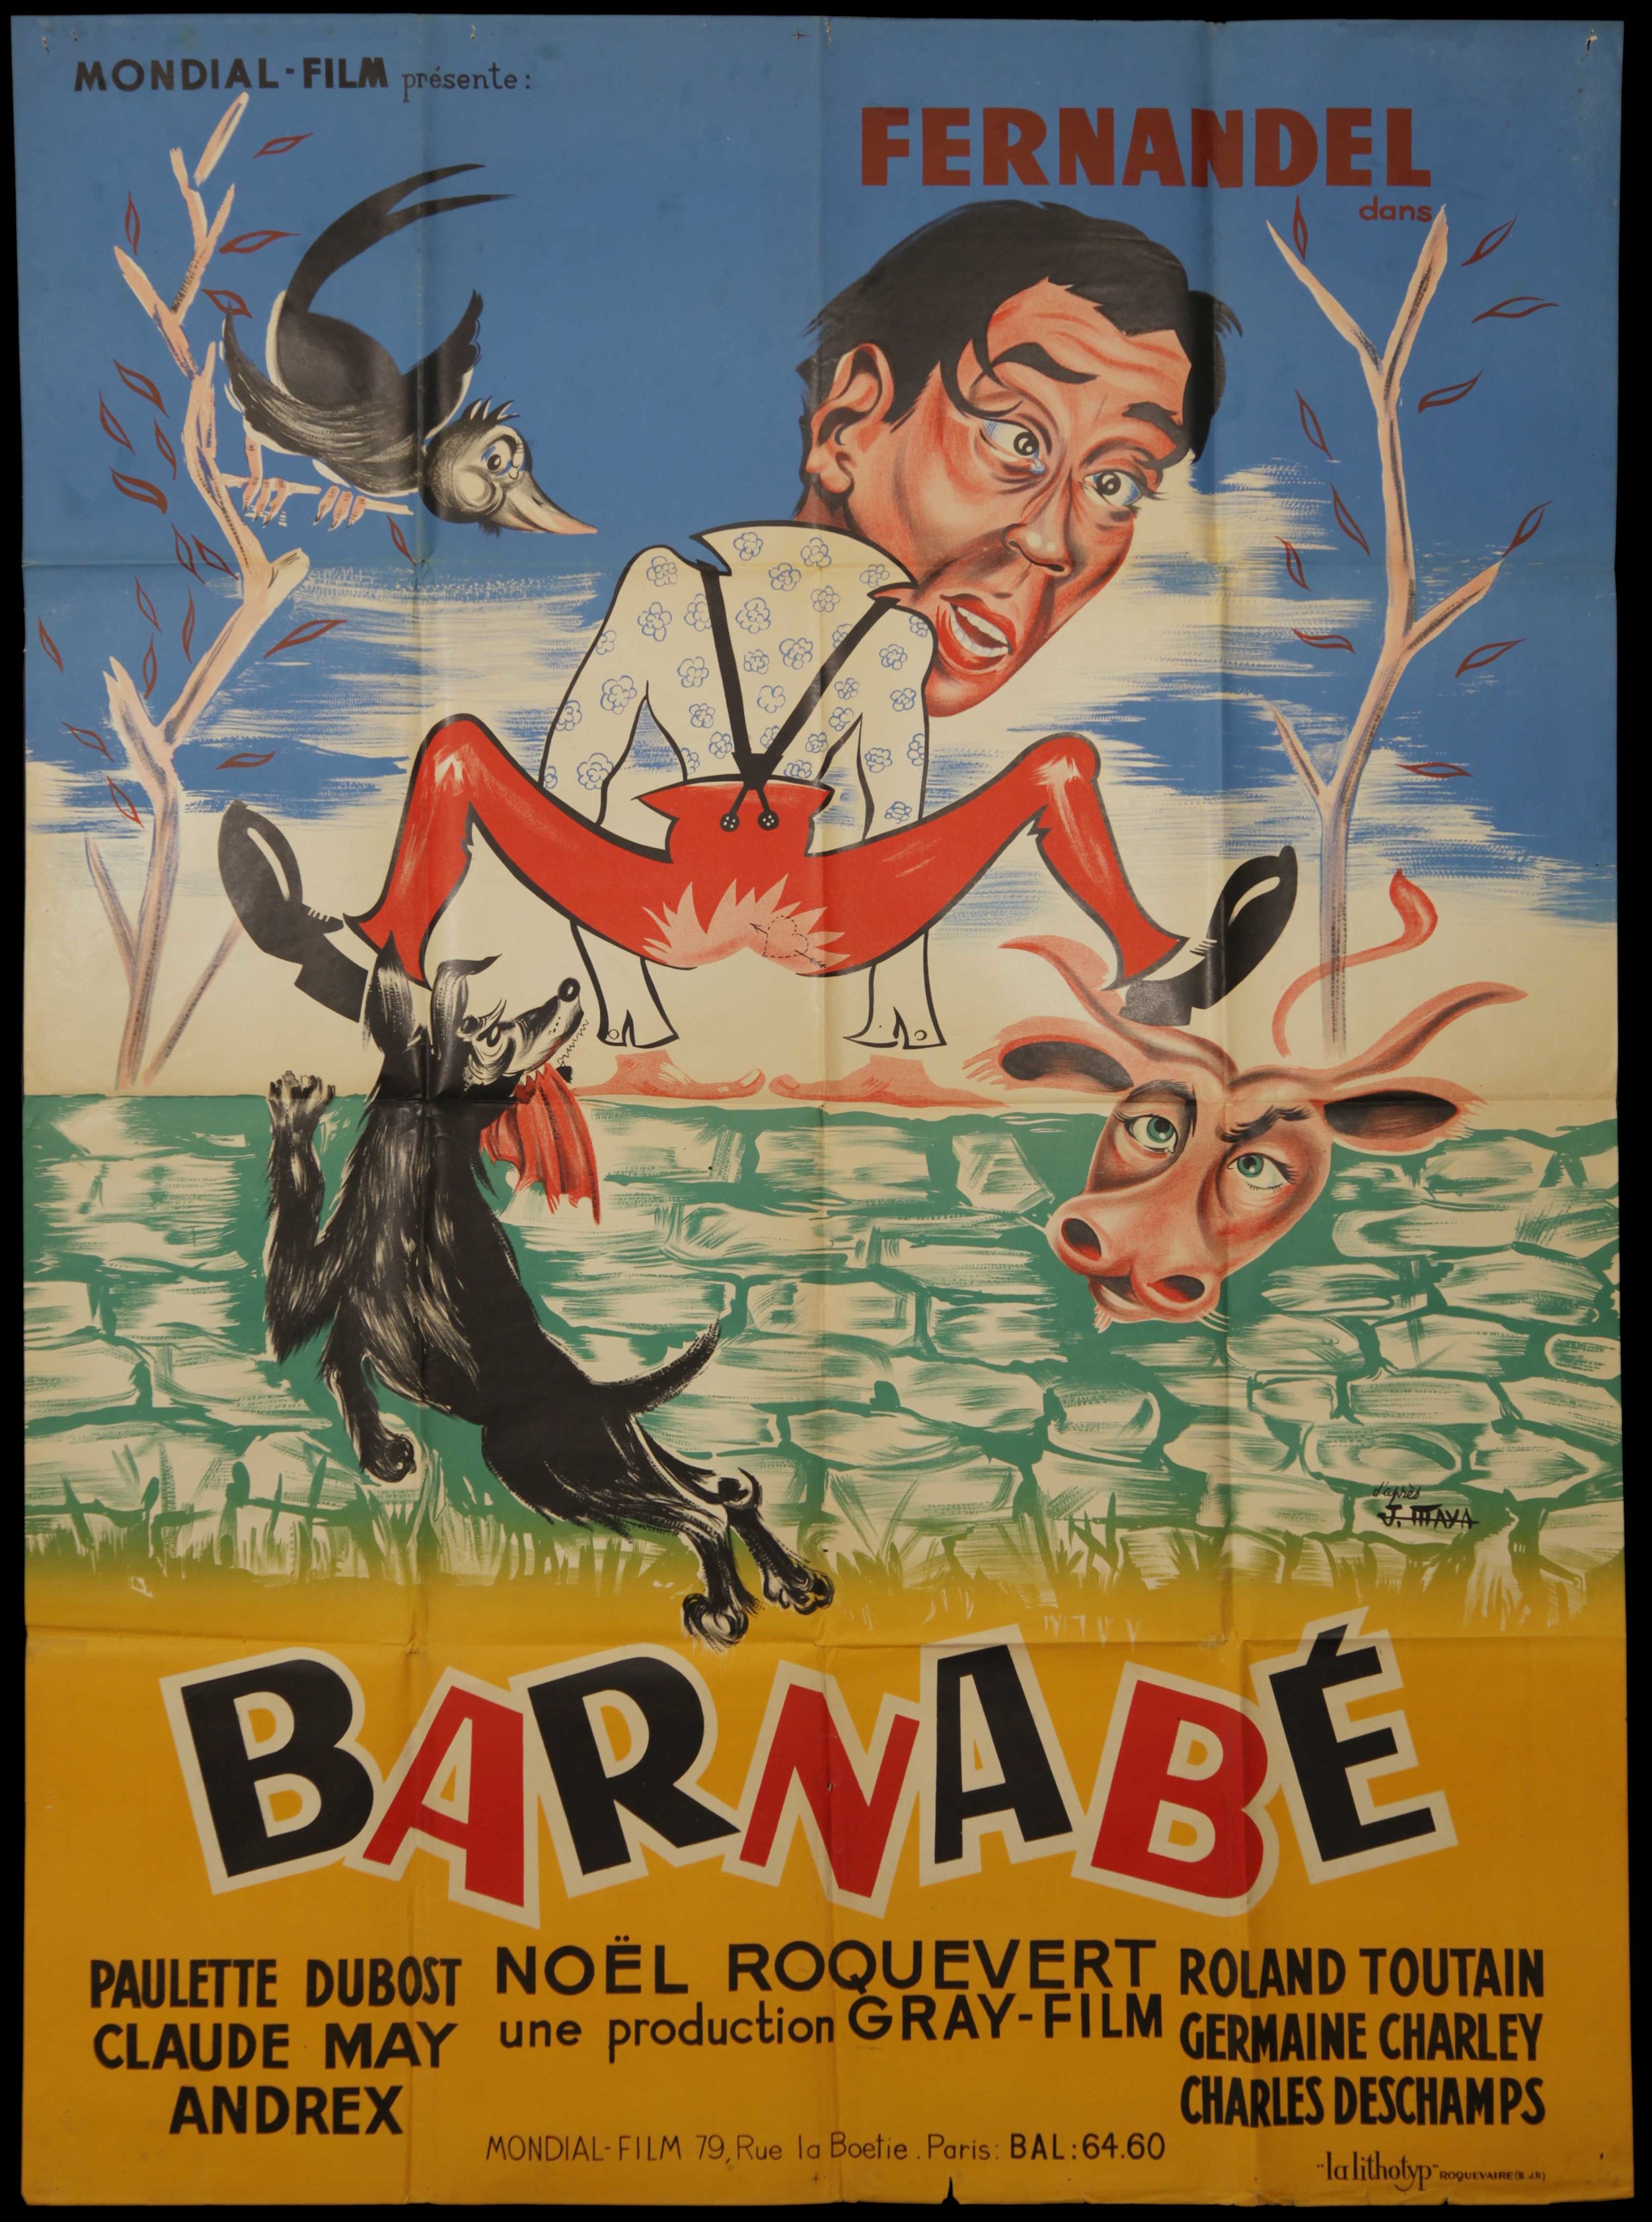 Fernadel in "Barnabé" (1938)